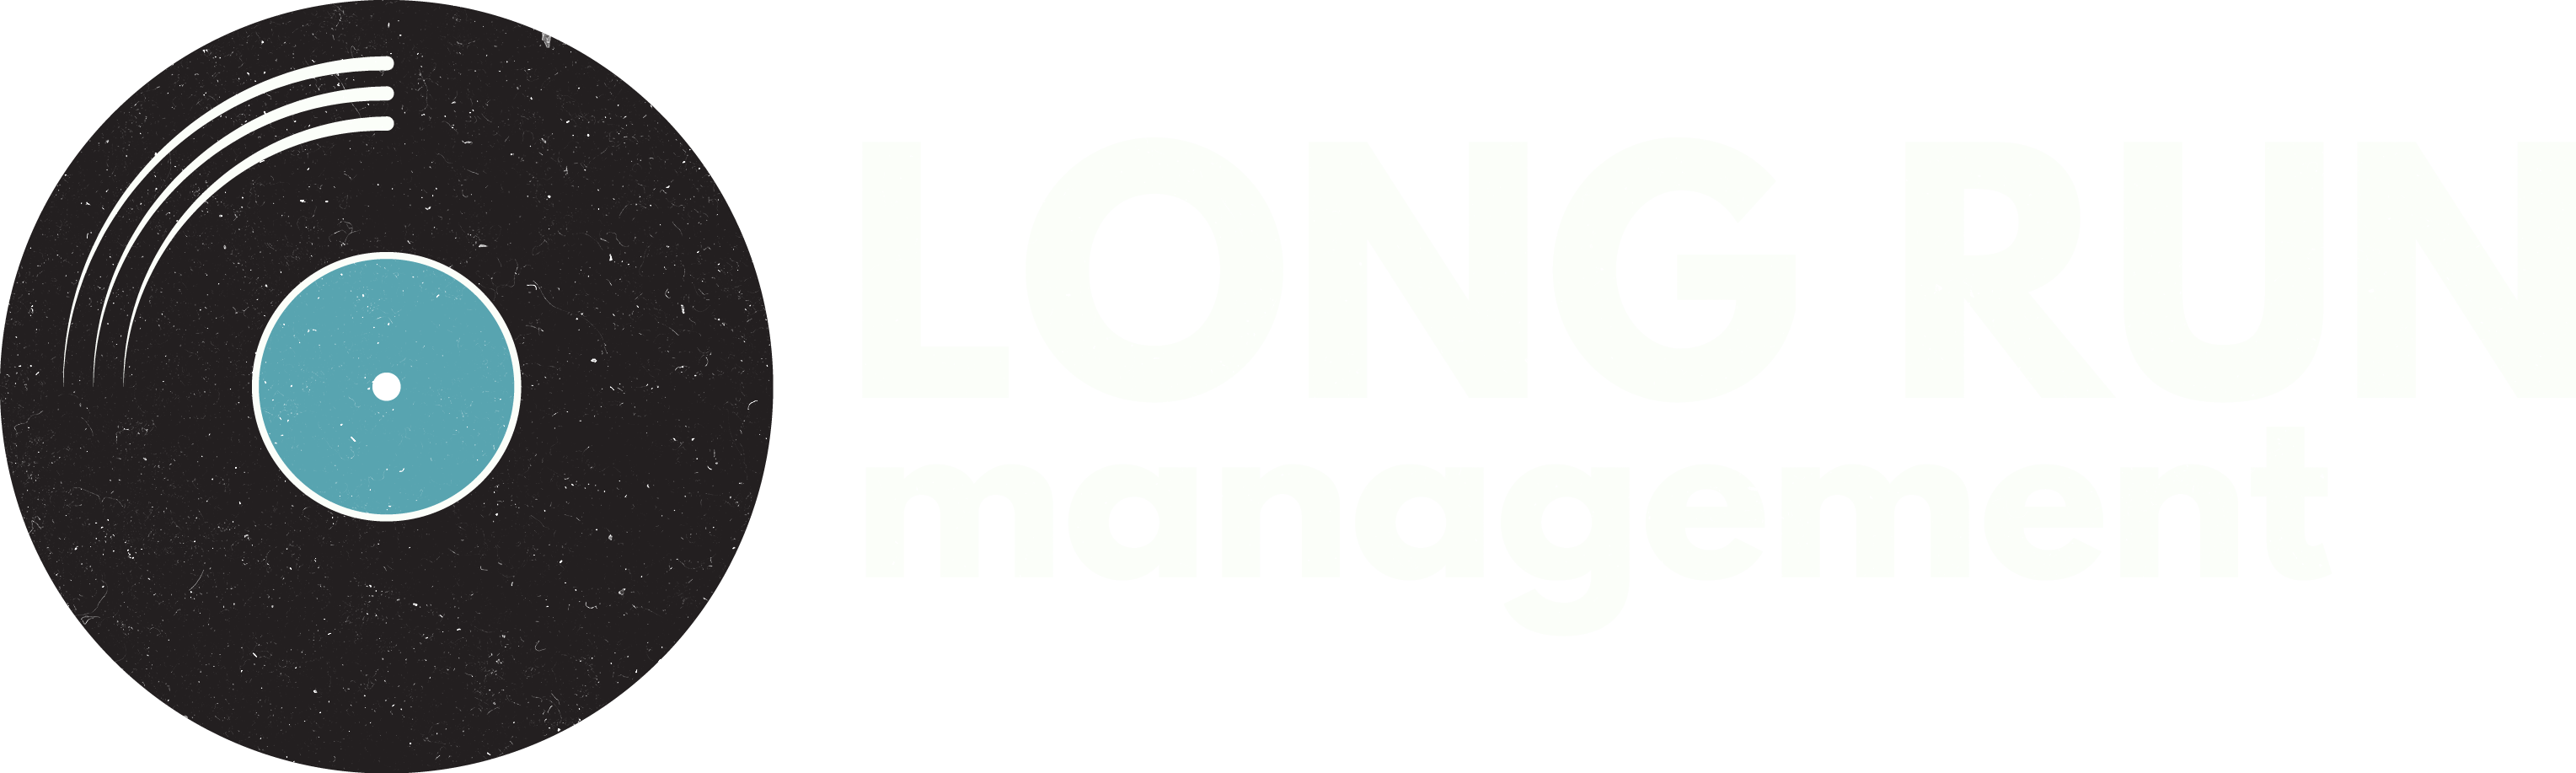 Long Run Management 